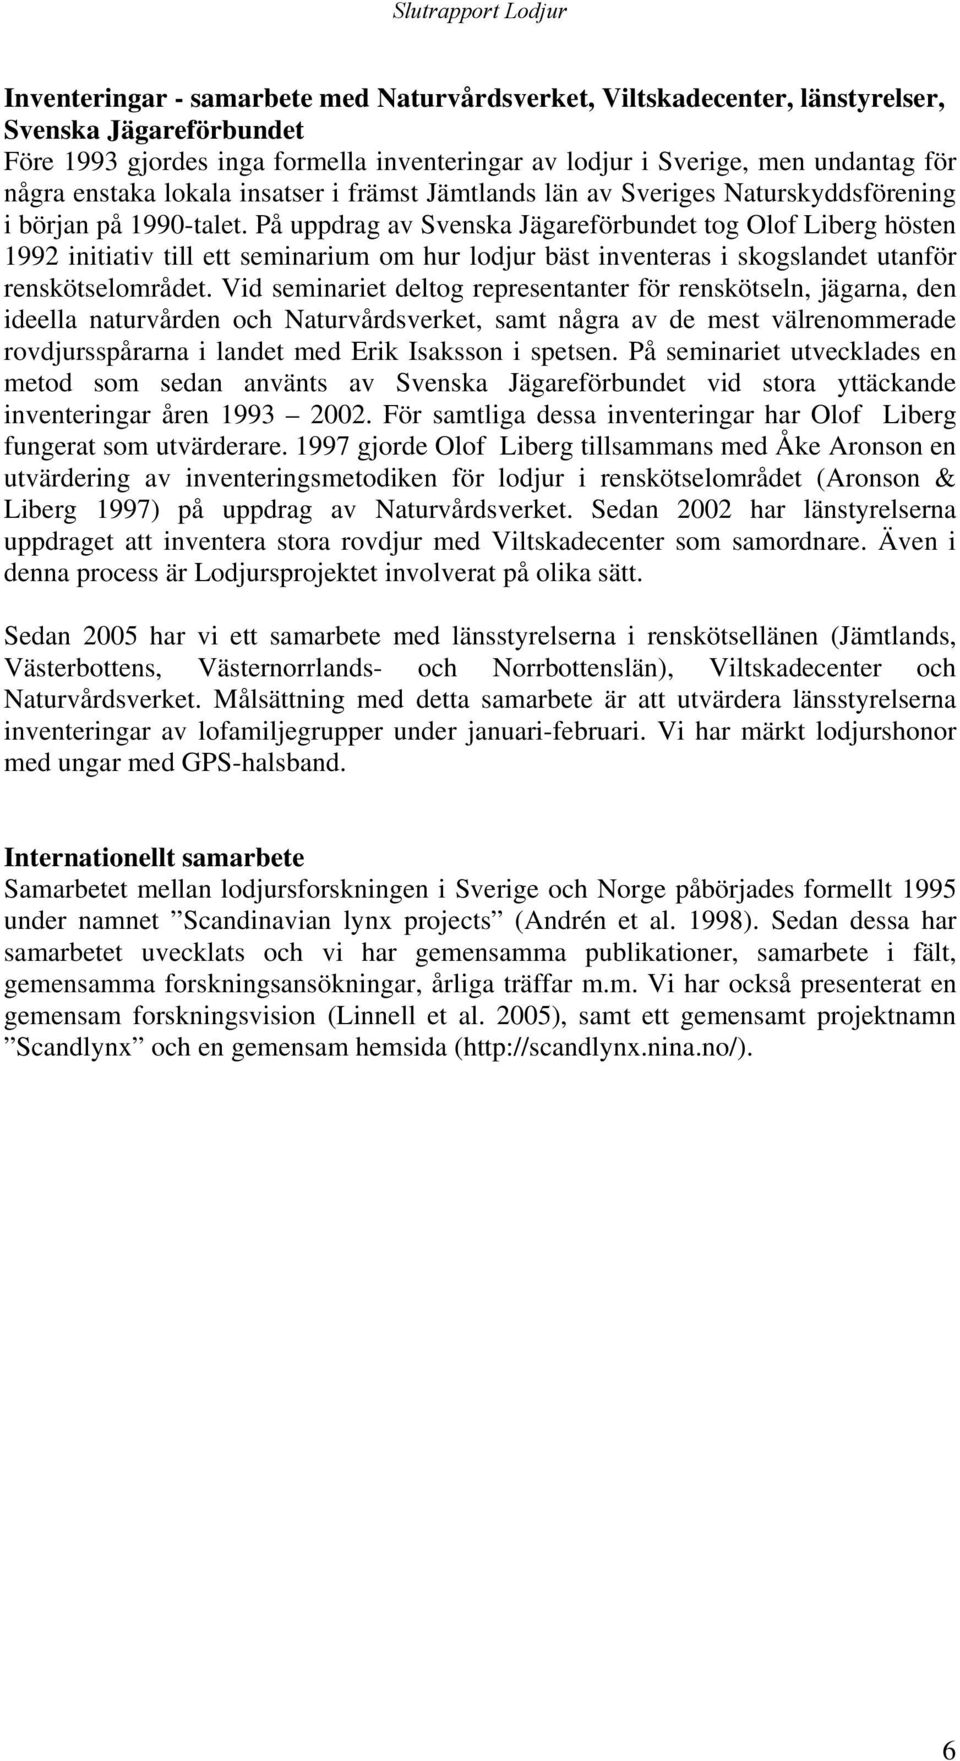 På uppdrag av Svenska Jägareförbundet tog Olof Liberg hösten 1992 initiativ till ett seminarium om hur lodjur bäst inventeras i skogslandet utanför renskötselområdet.